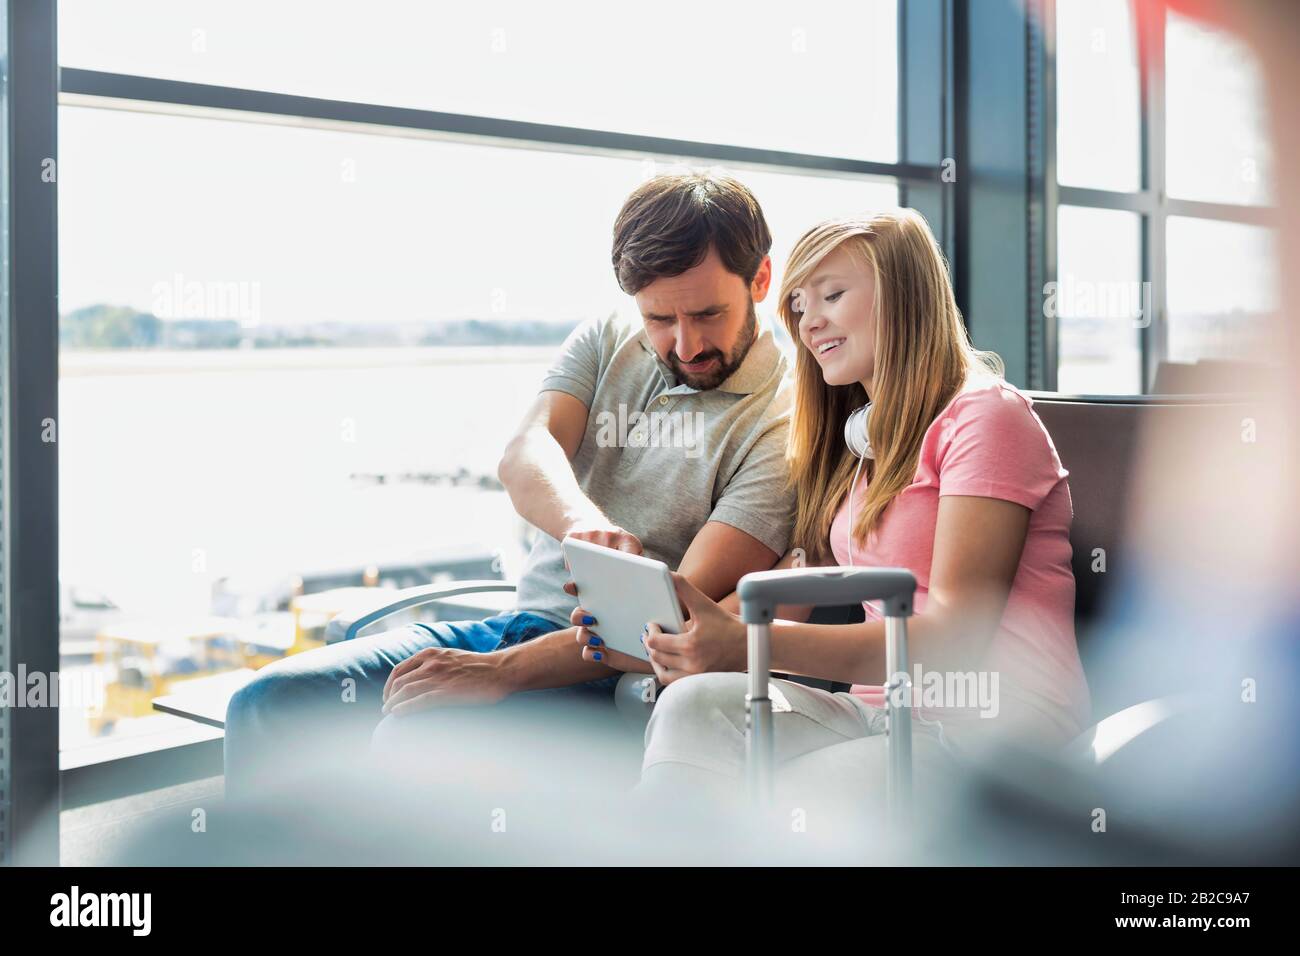 Ritratto di giovane bella ragazza teenage che mostra tablet digitale a suo padre mentre si siede e in attesa del loro volo in aeroporto Foto Stock